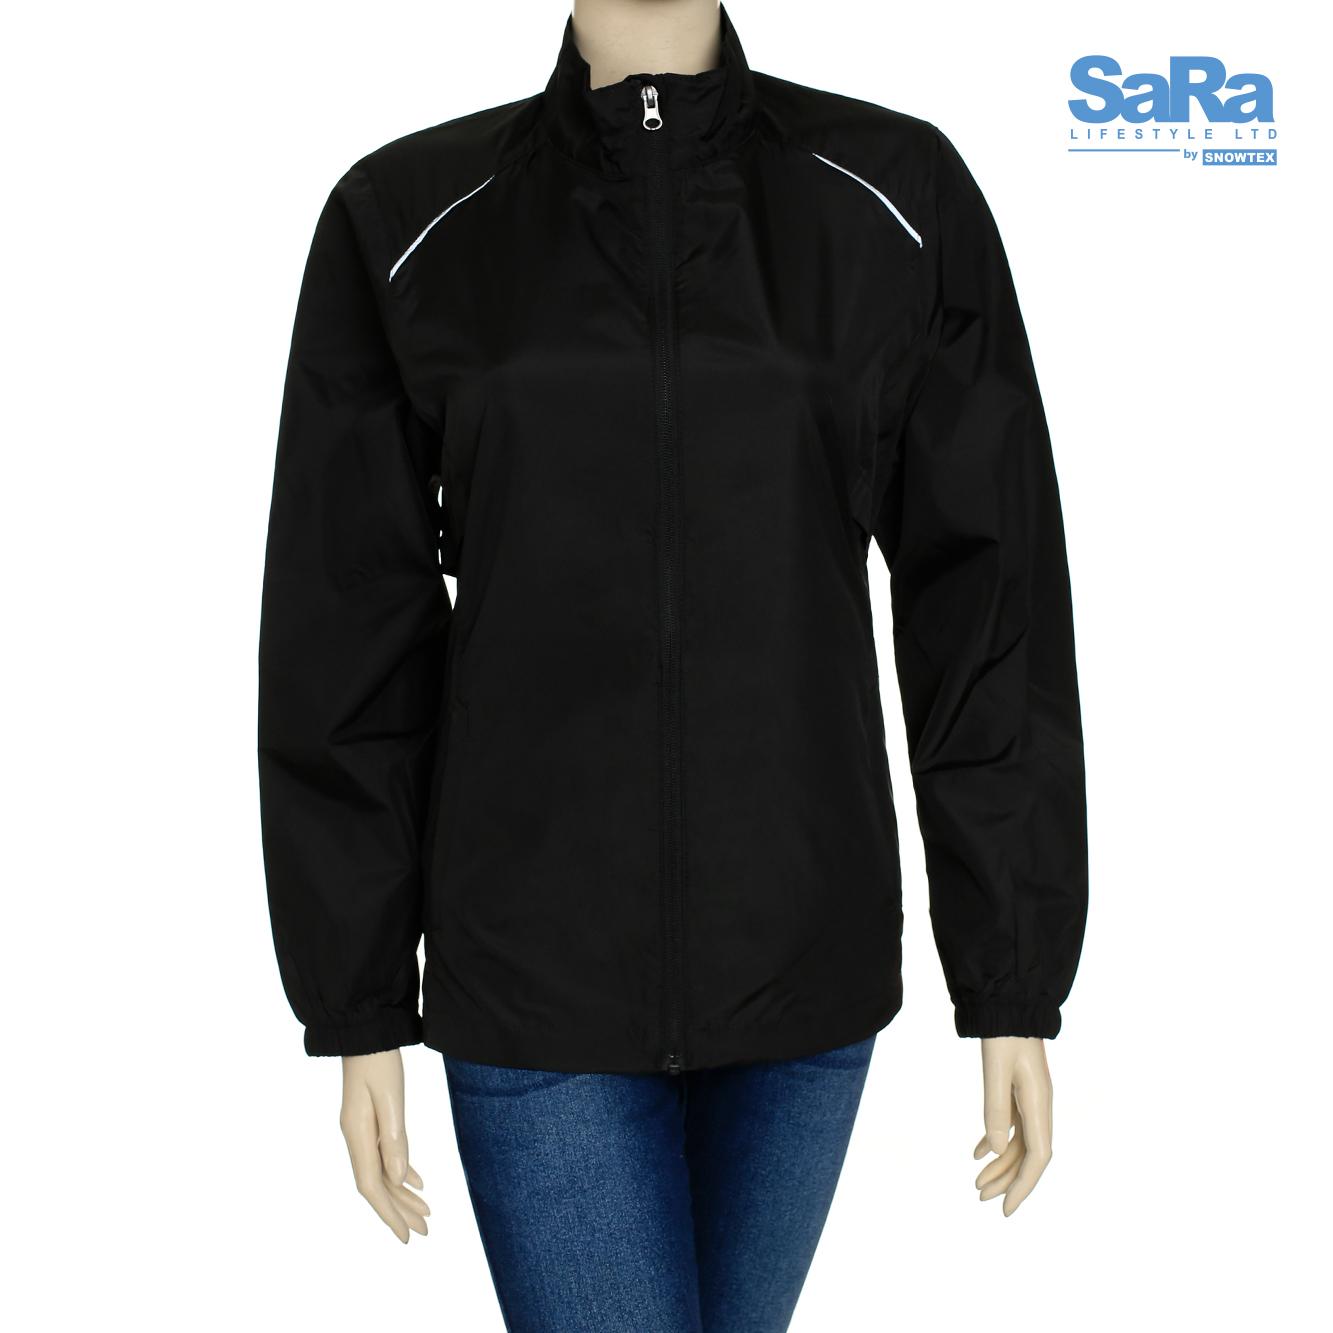 SaRa Black Jacket for Women